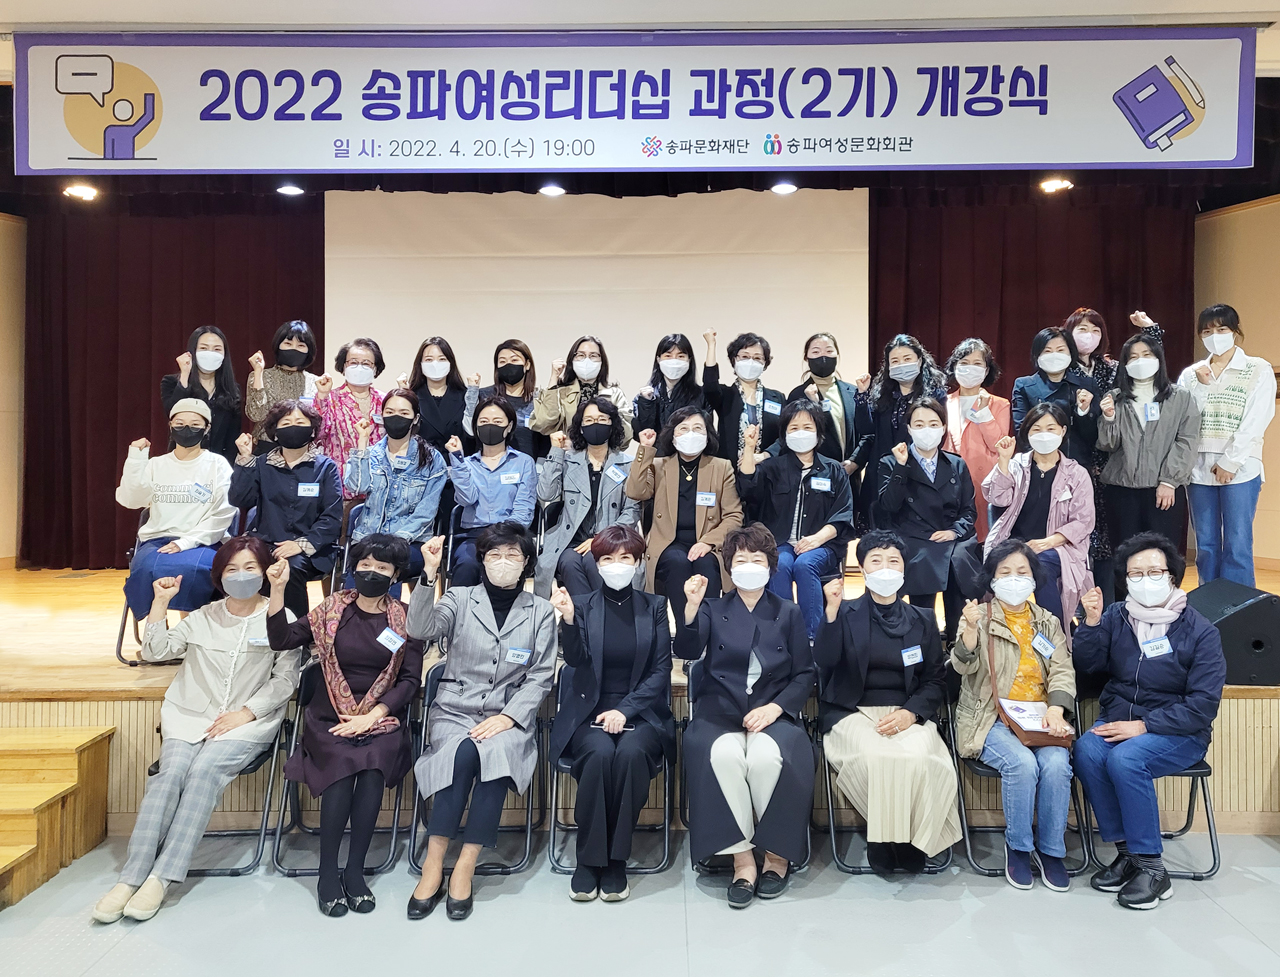 송파여성리더십 과정 2기 수강생들의 단체사진이다.